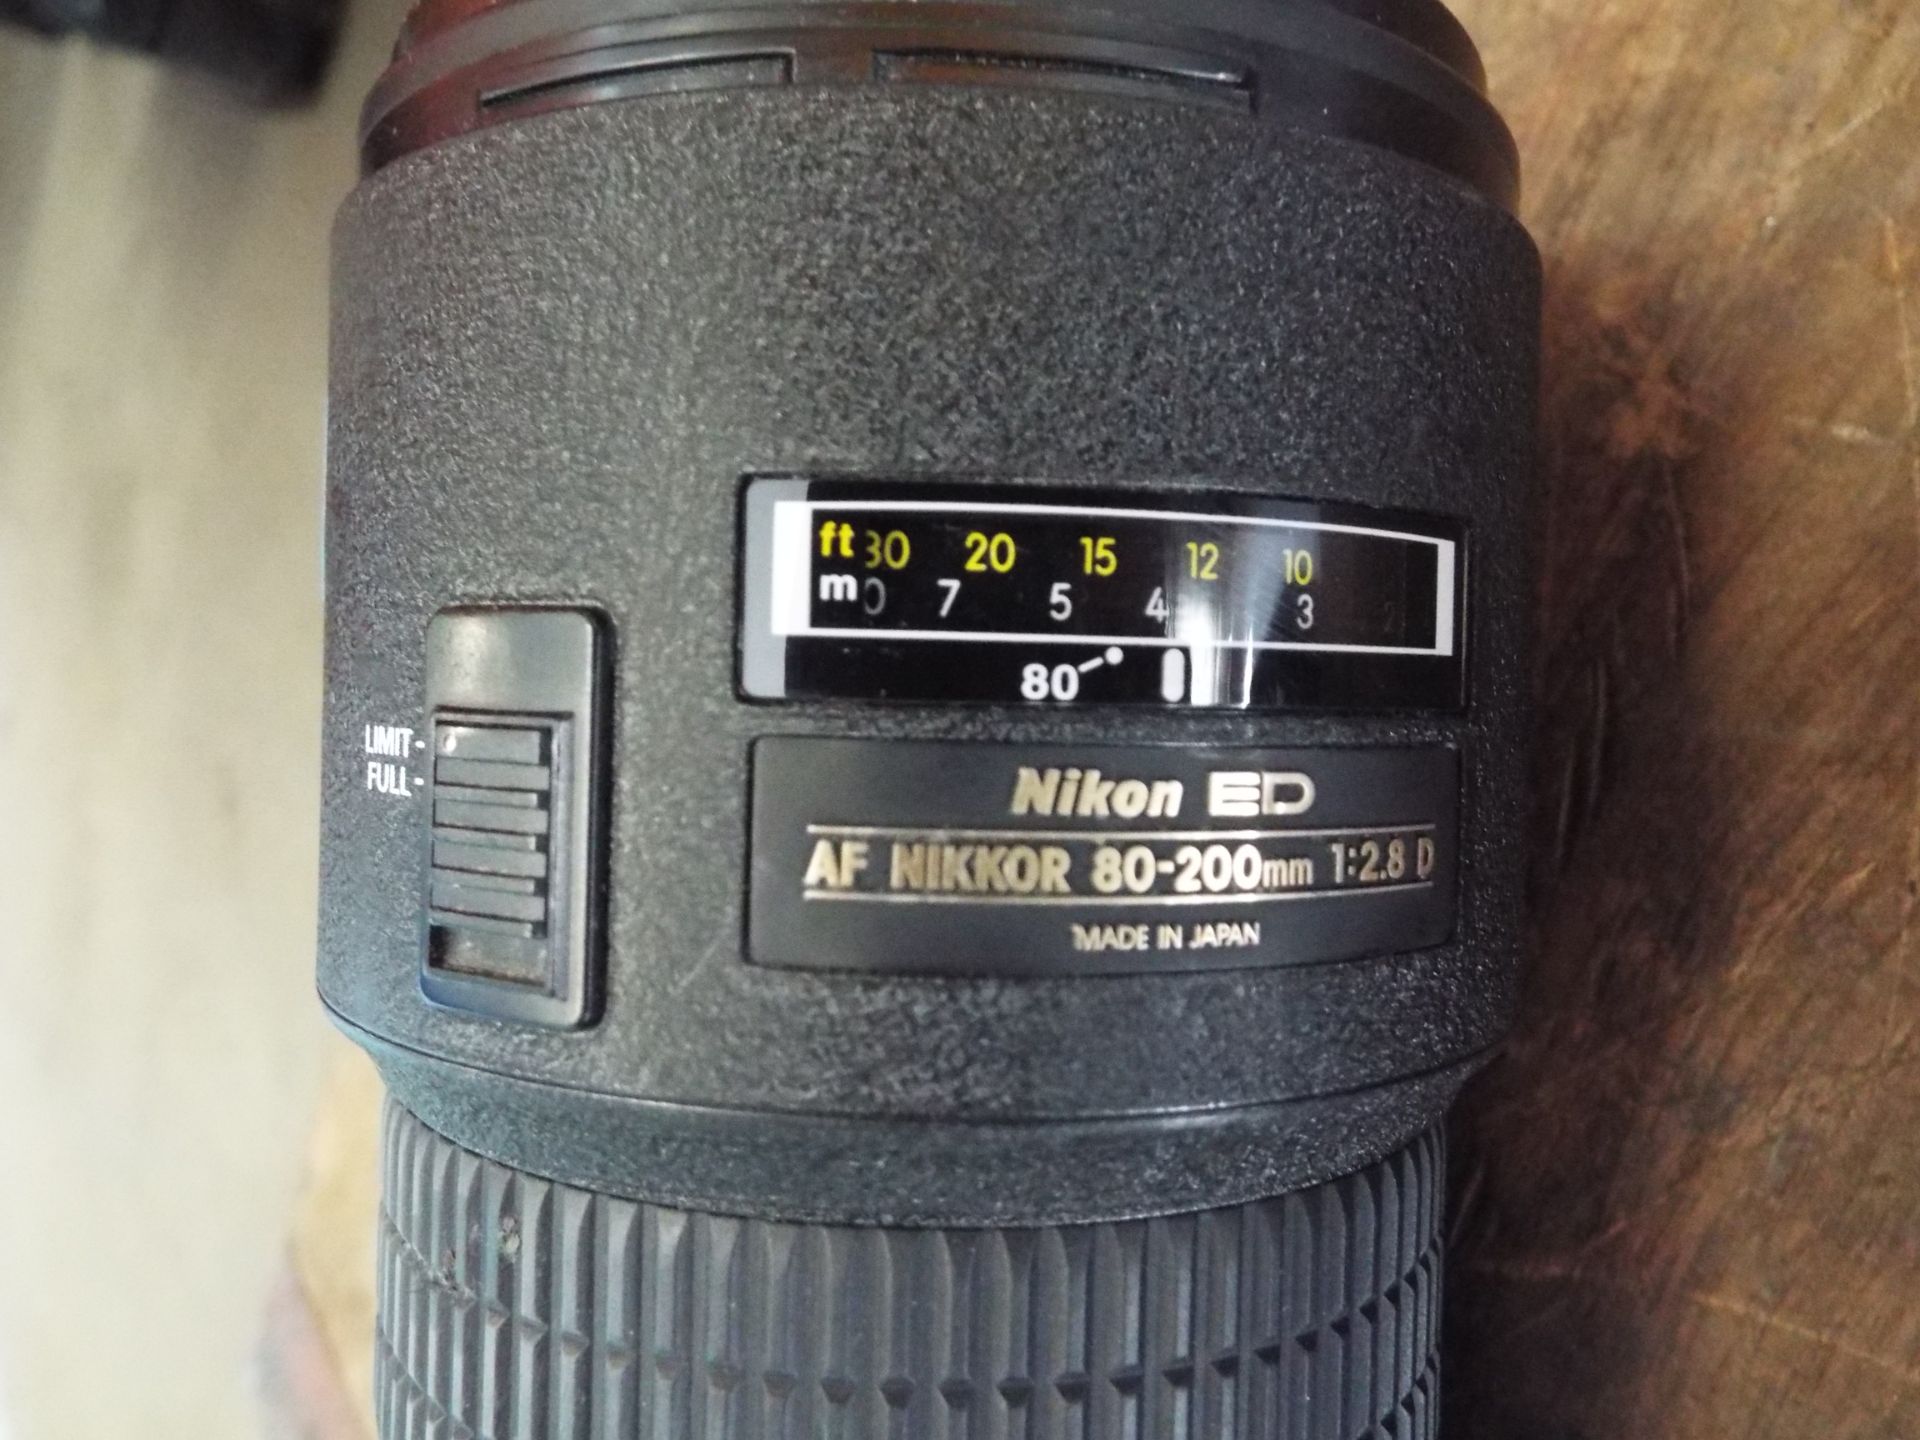 Nikon ED AF Nikkor 80-200mm 1:2.8 D Lense with Leather Carry Case - Bild 3 aus 8